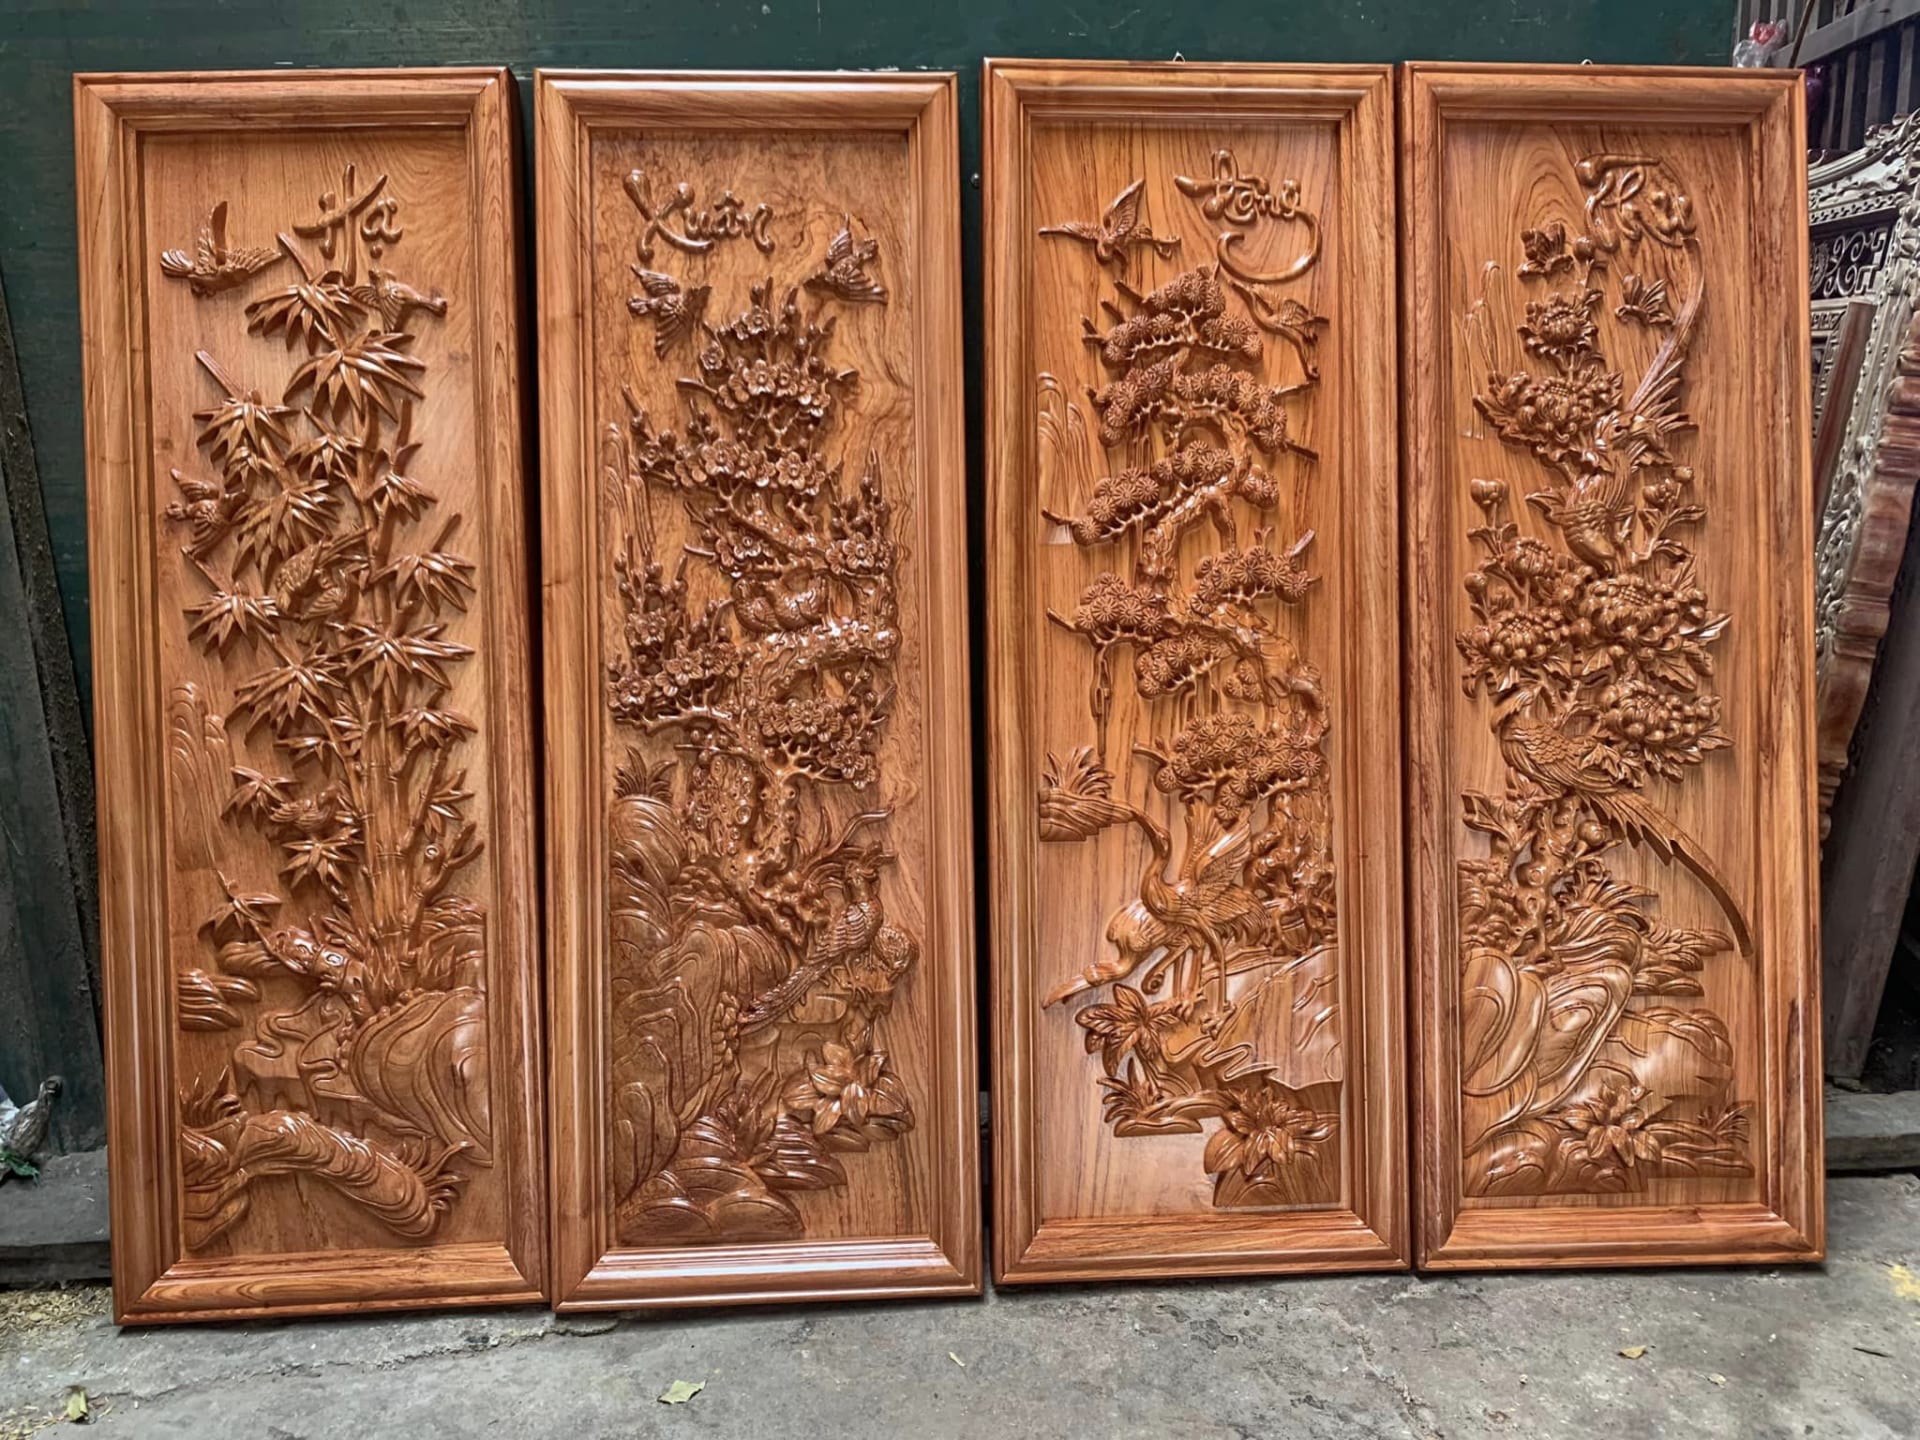 Hương Đình - Địa chỉ bán tranh gỗ chất lượng và uy tín tại Hà Nội